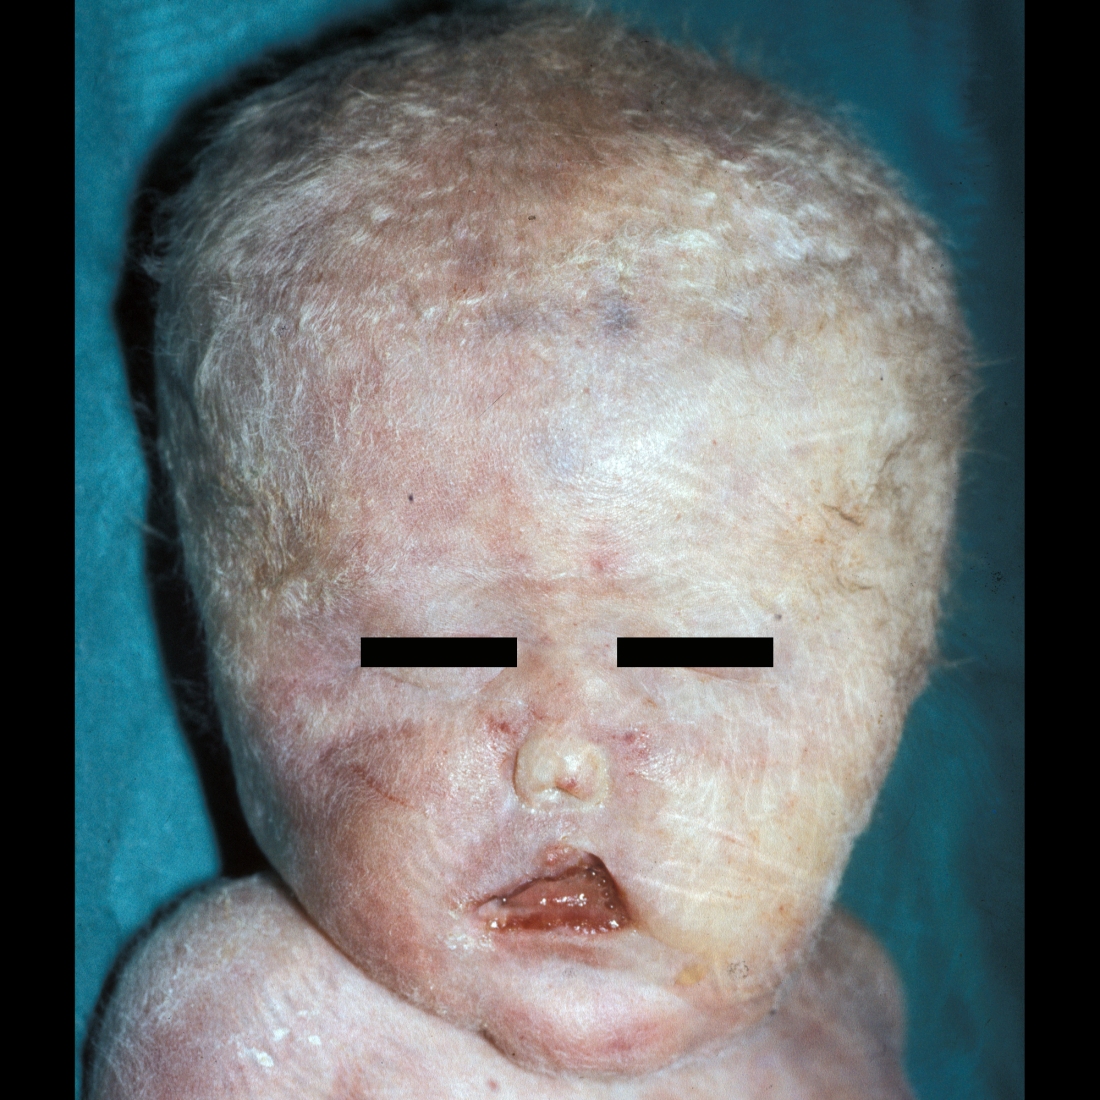 Clinical image of holoprosencephaly